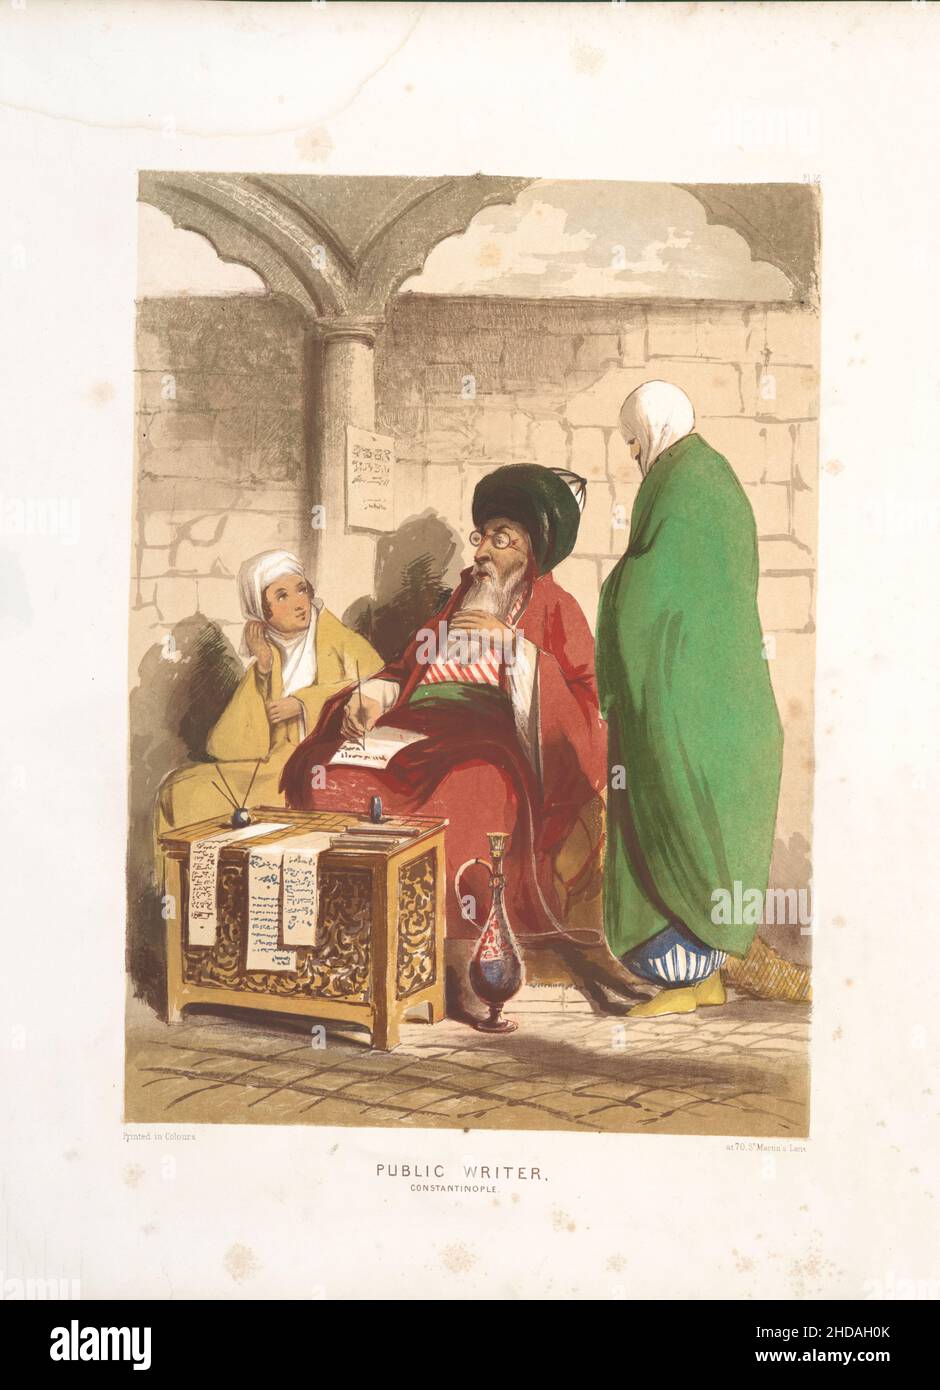 Lithographie de couleur vintage de l'Empire ottoman: Écrivain public, Constantinople 1854, par Forbes Mac Bean (artiste) et Justin Sutcliffe (lithographe) Banque D'Images